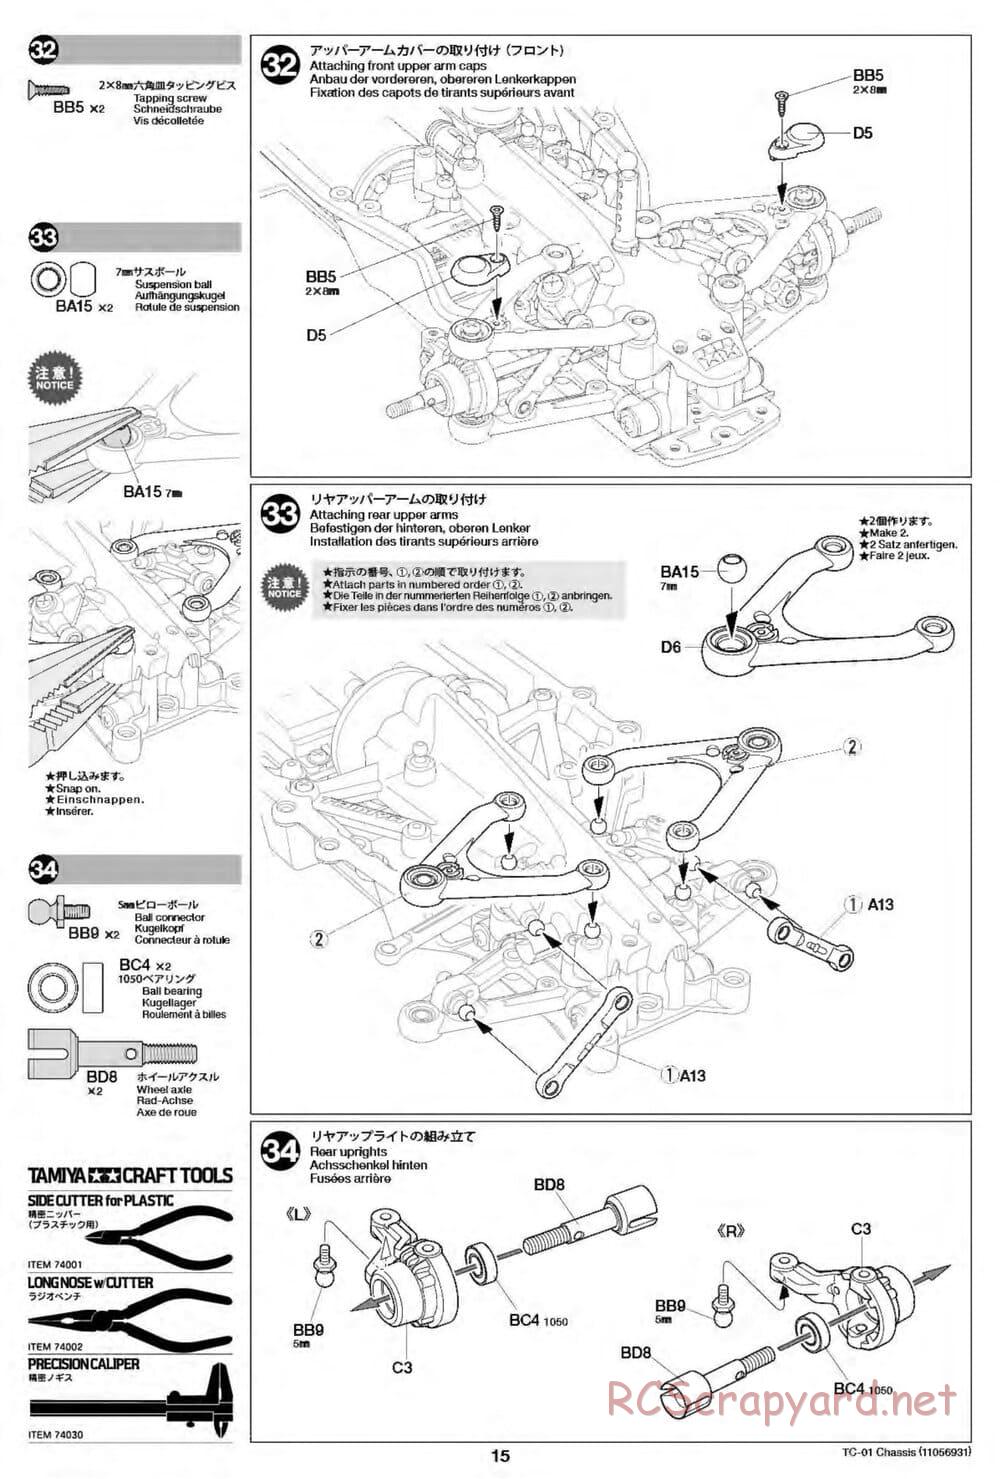 Tamiya - TC-01 Chassis - Manual - Page 15